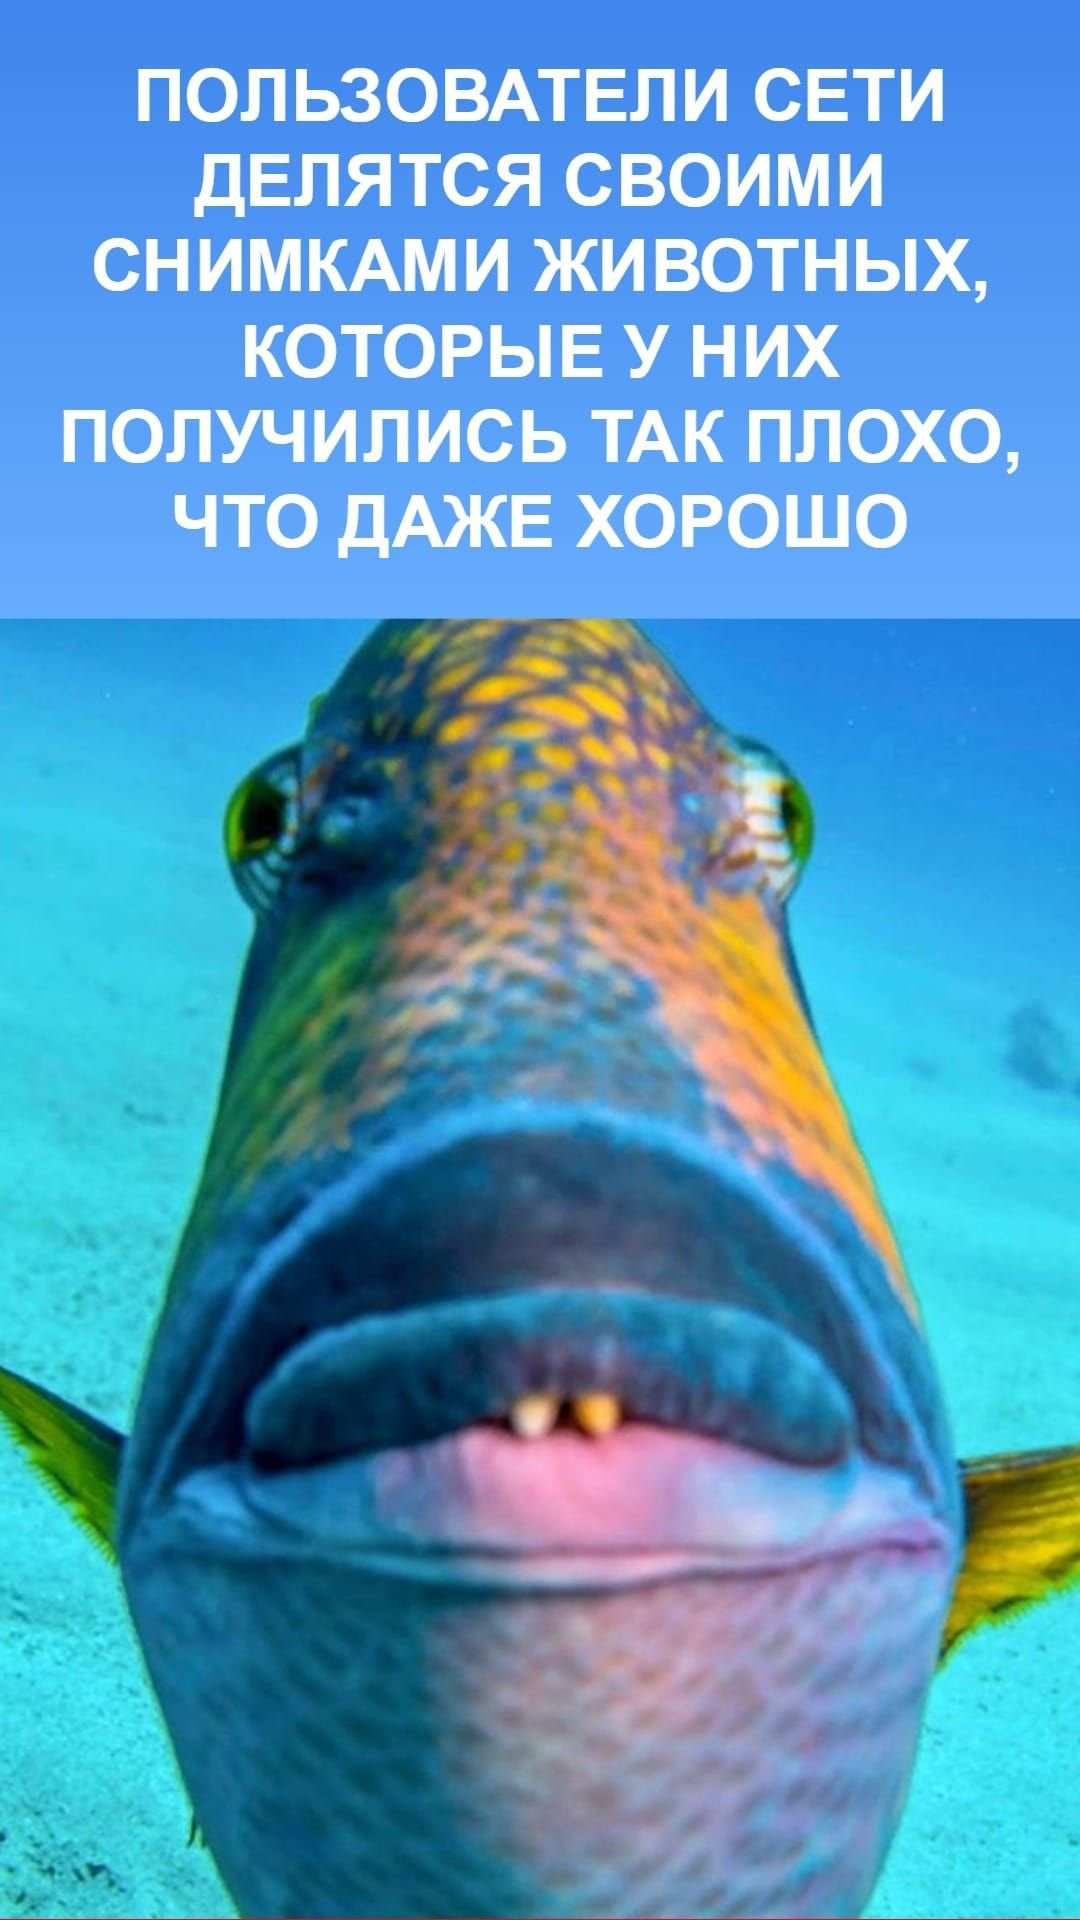 ФОТО: Рыба с губами 3